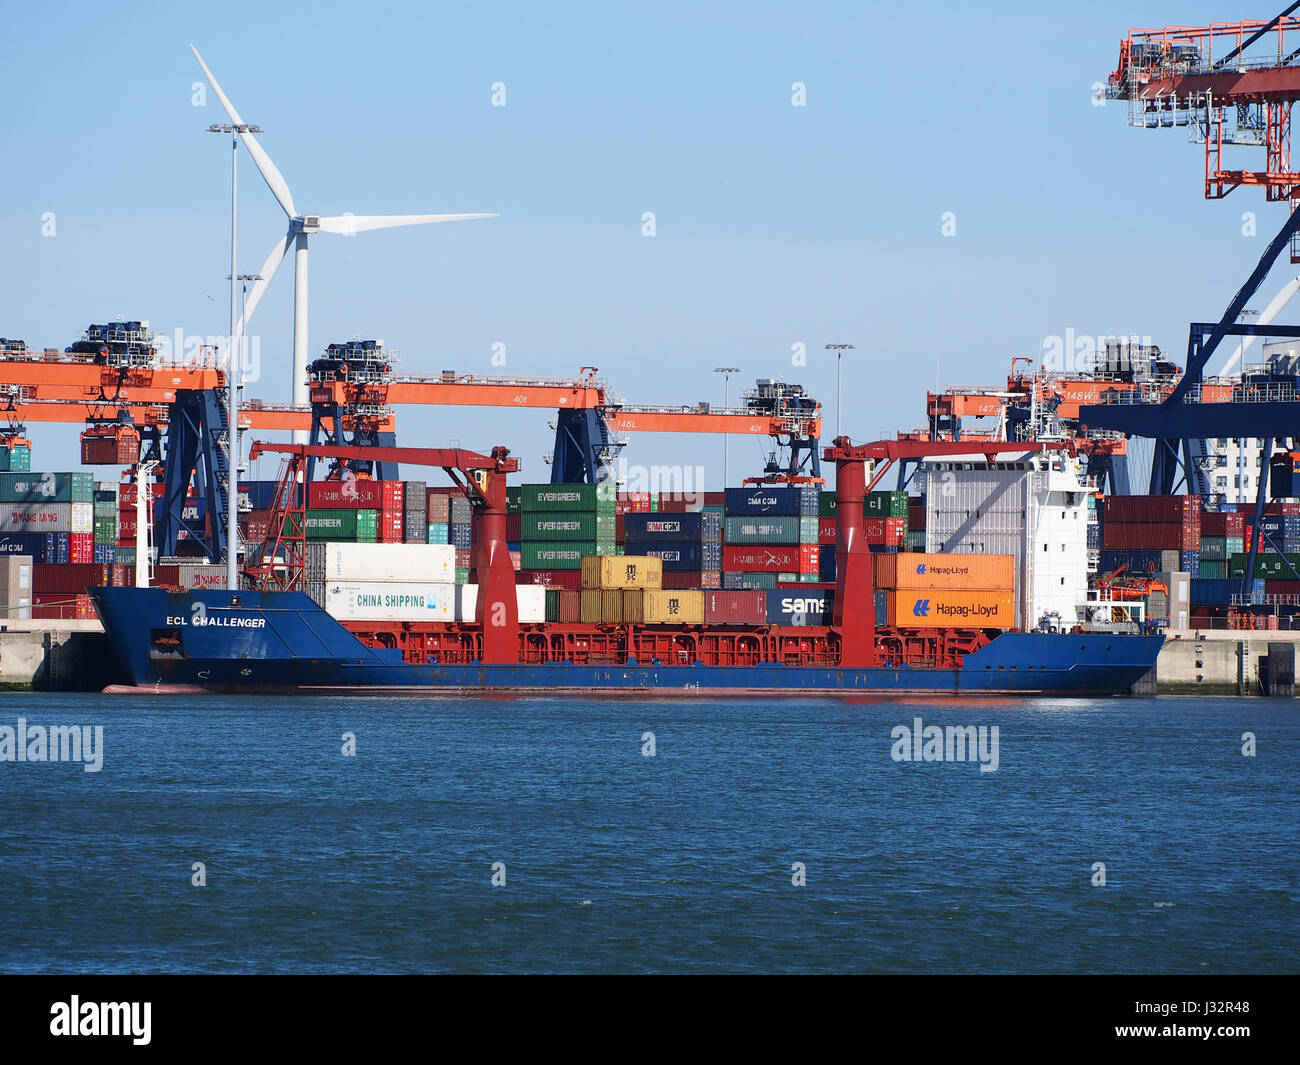 Challenger ECL (navire, 1995), Amazonehaven, Port de Rotterdam pic1 Banque D'Images